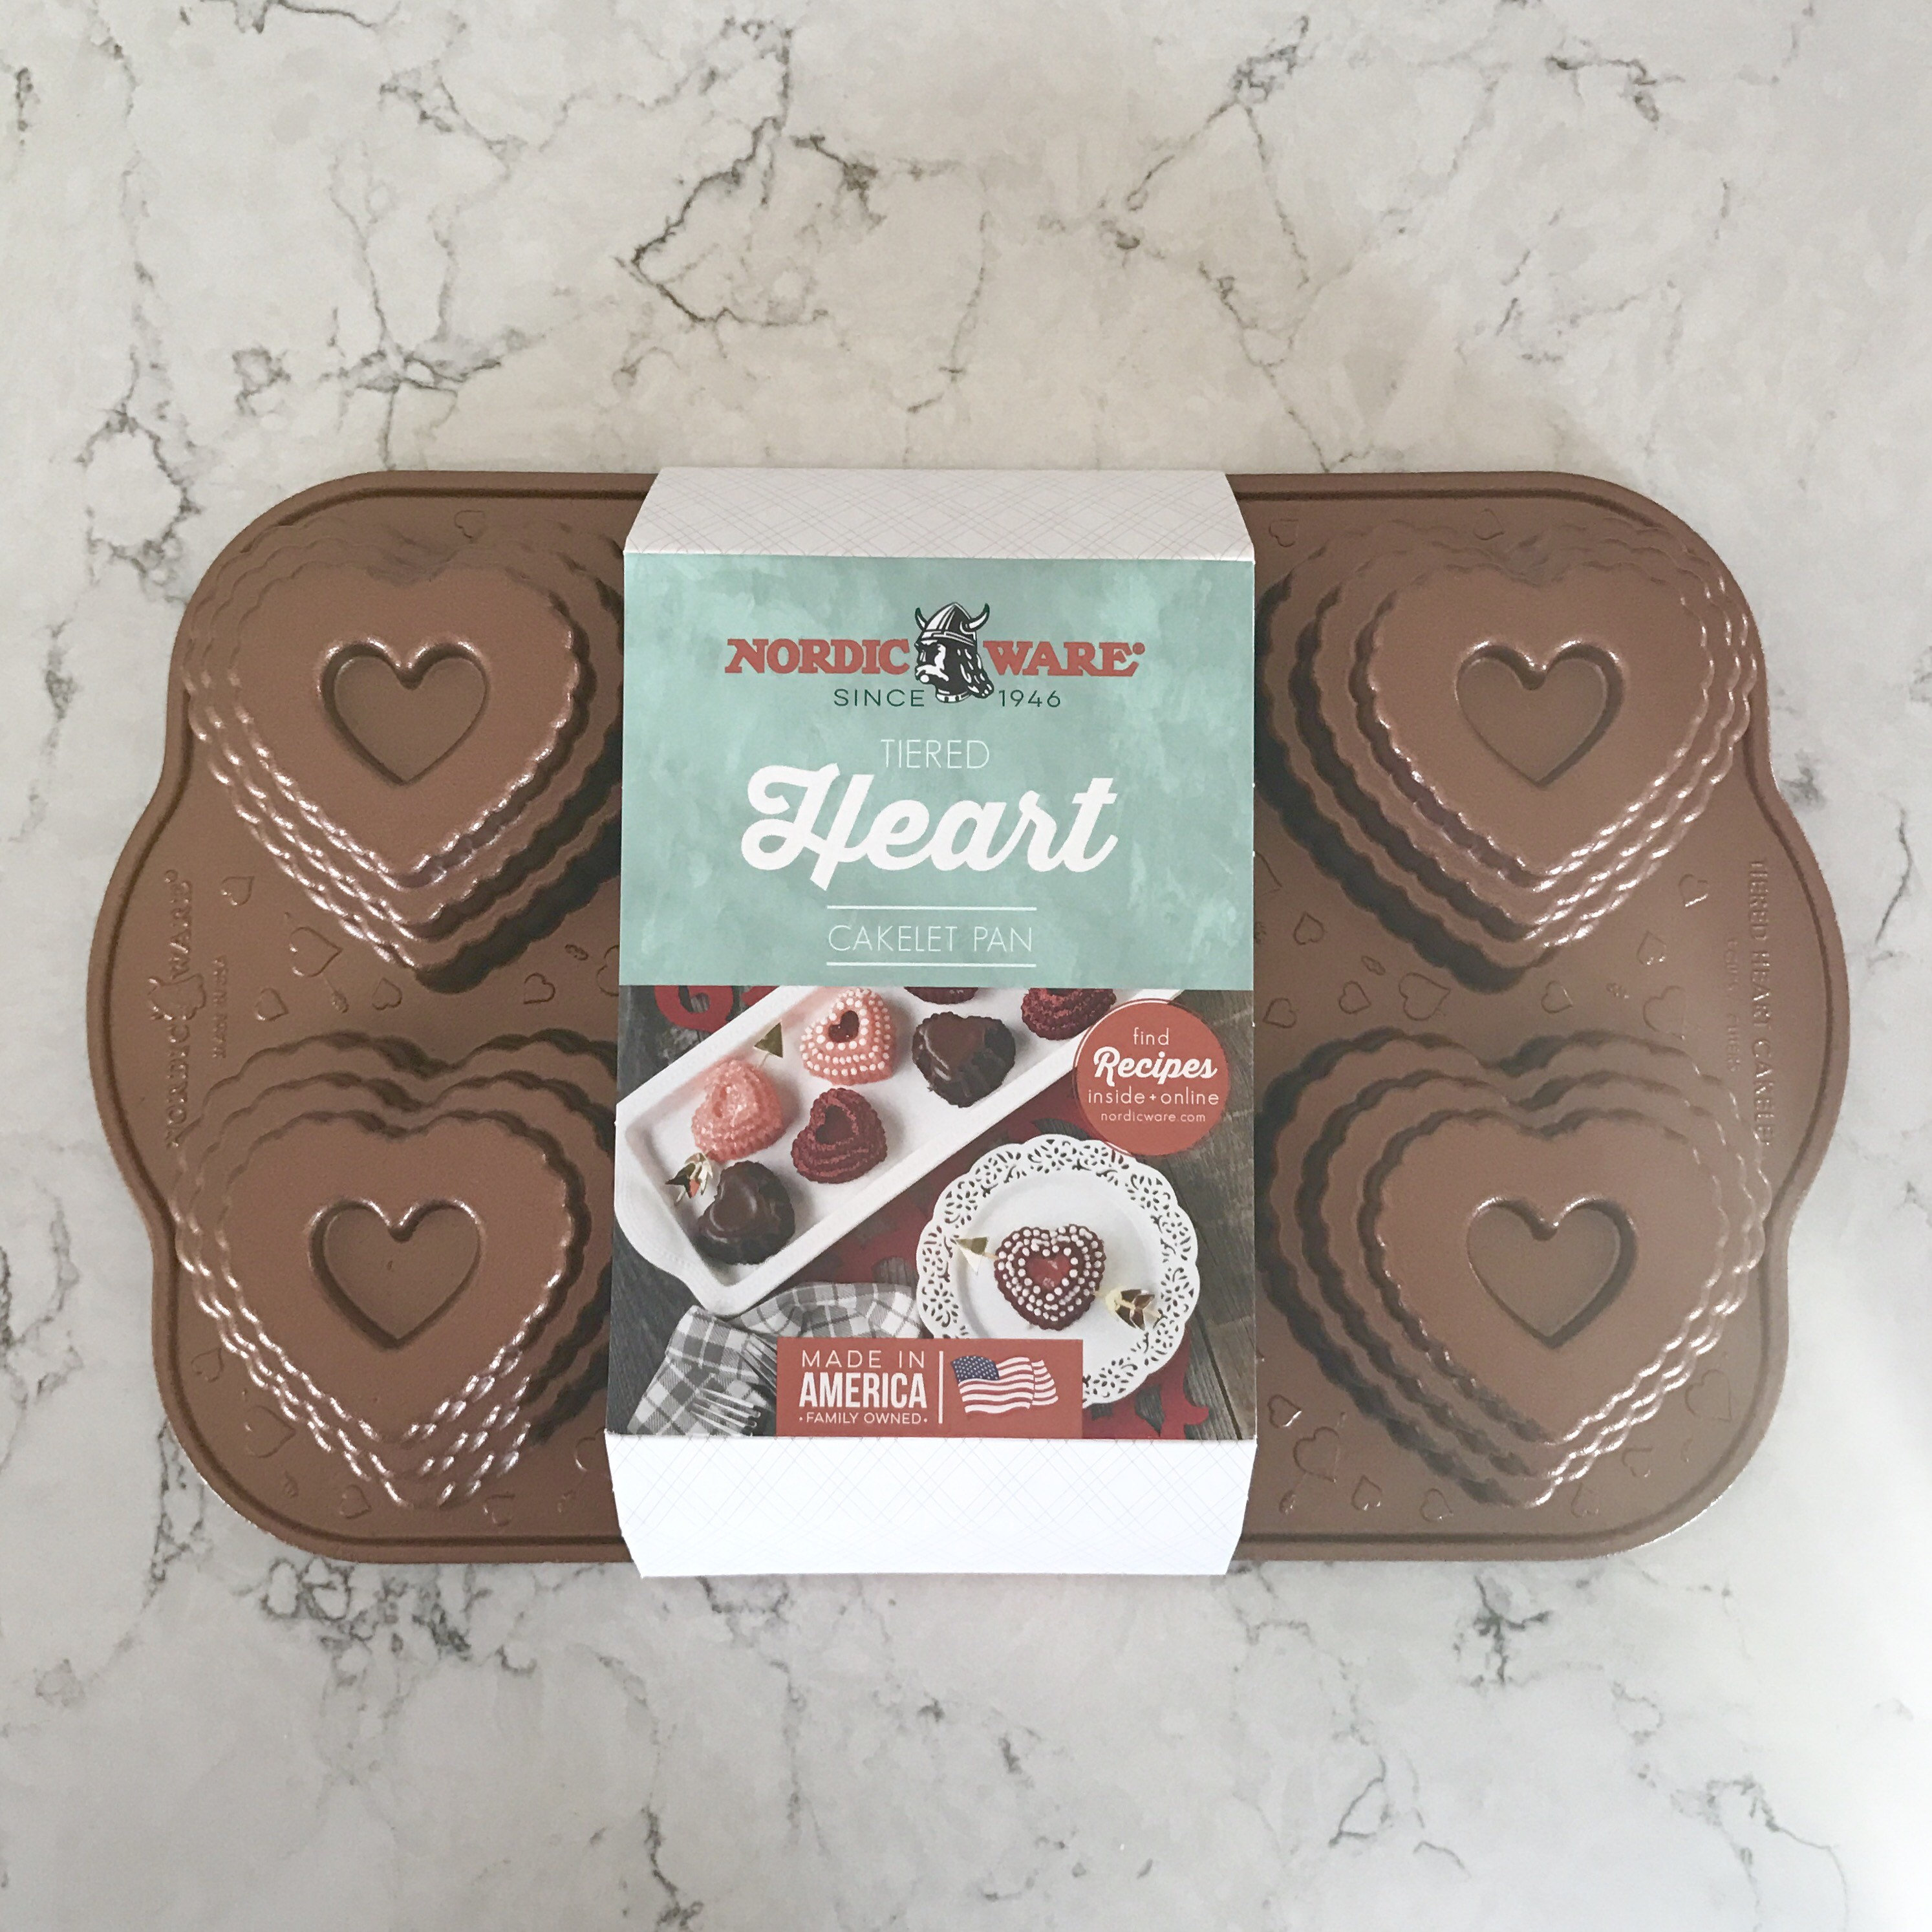 Tiered Heart Bundt Pan - Nordic Ware - OliveNation